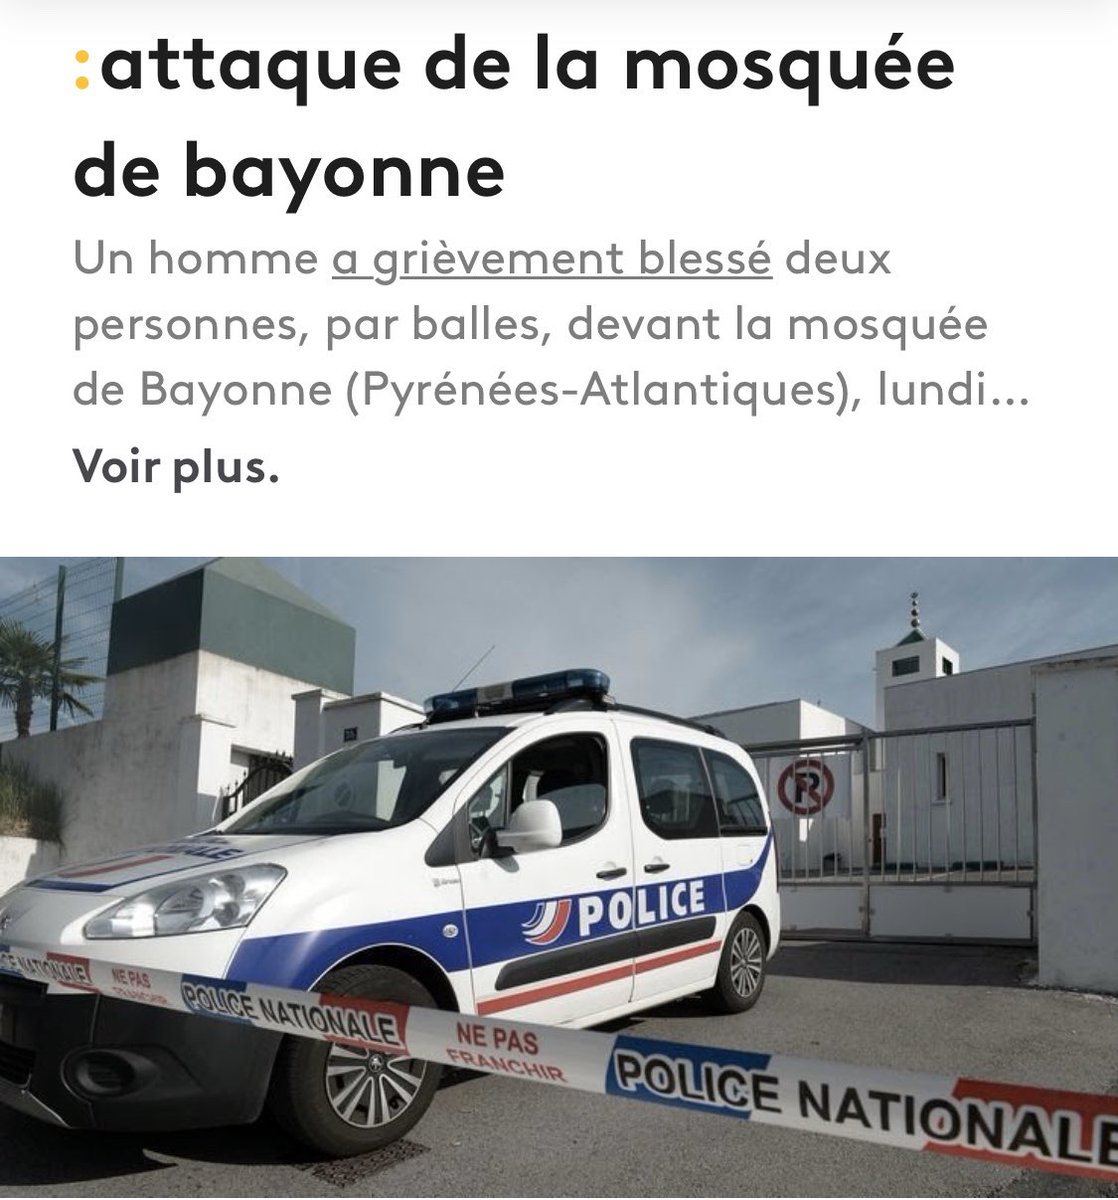 L’attentat de la mosquée de Bayonne